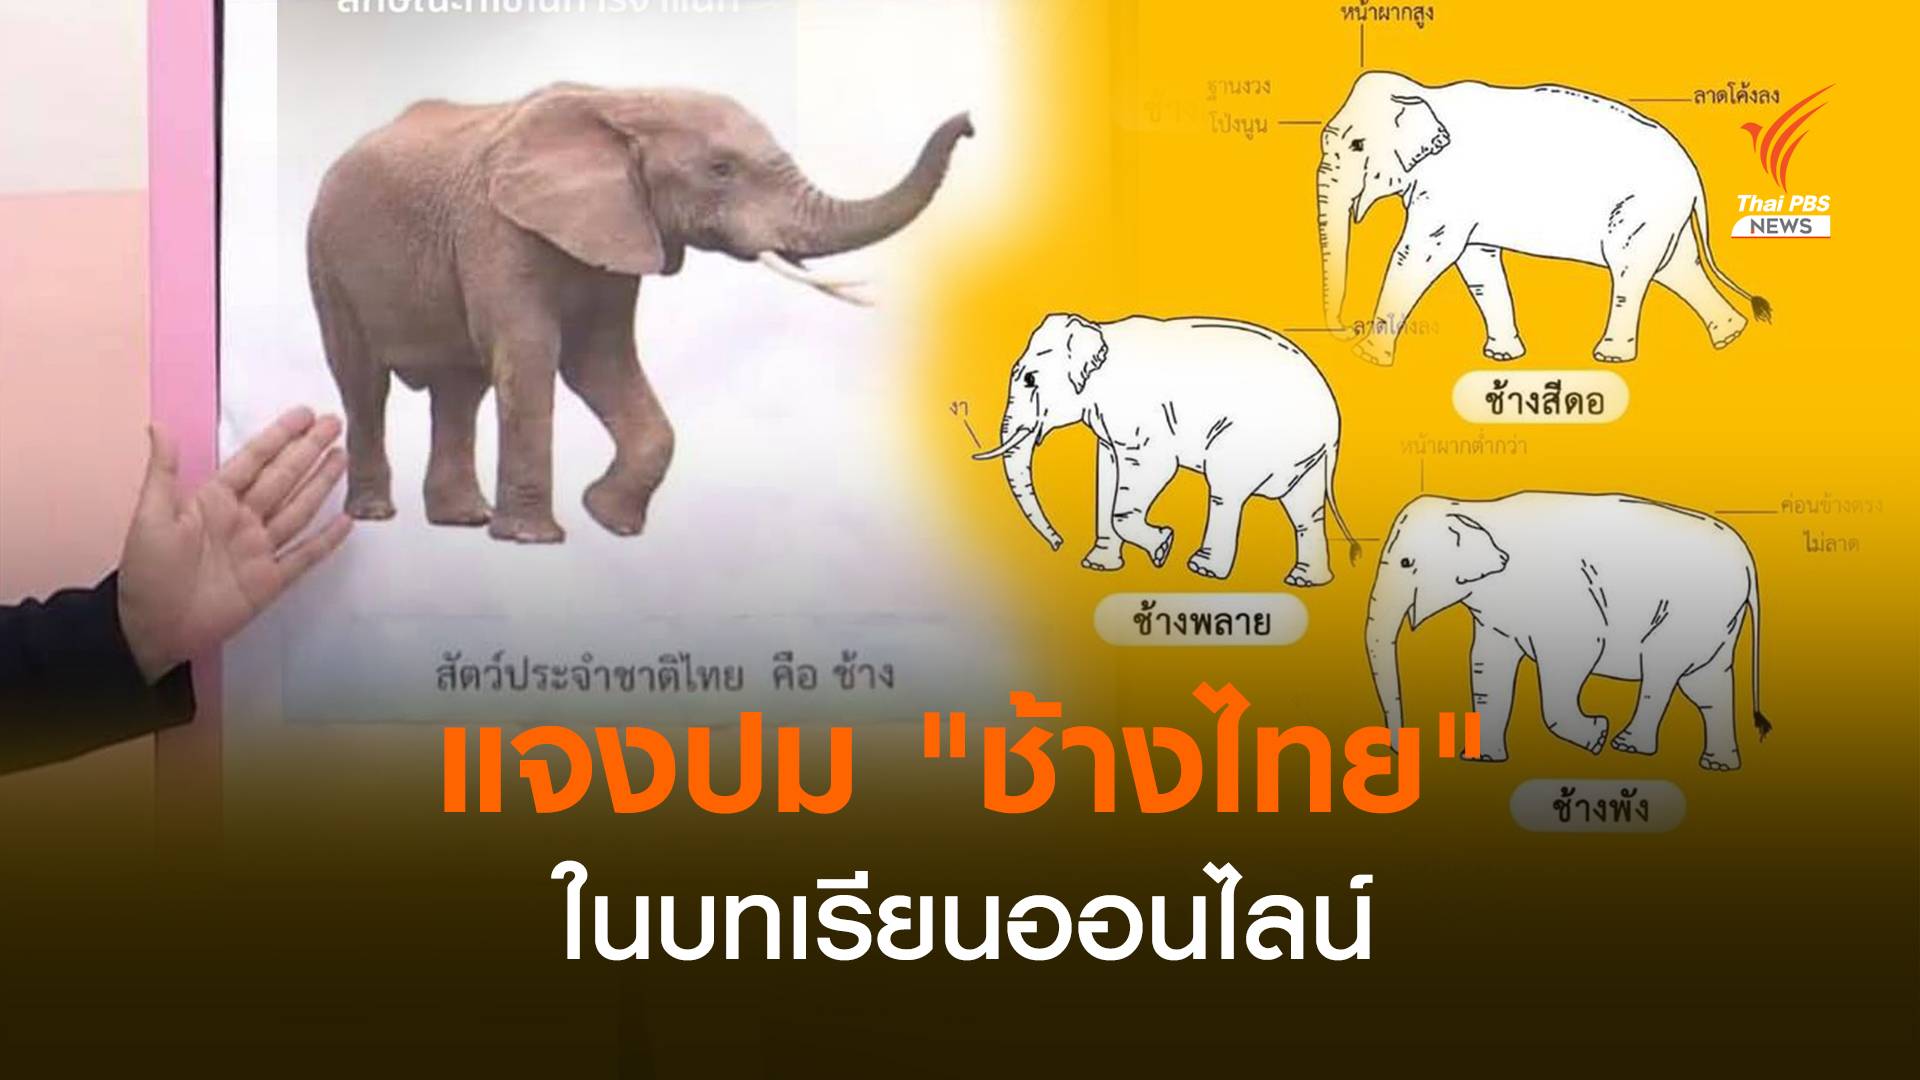 แจงปม "ช้างไทย" ในบทเรียนออนไลน์อนุบาล